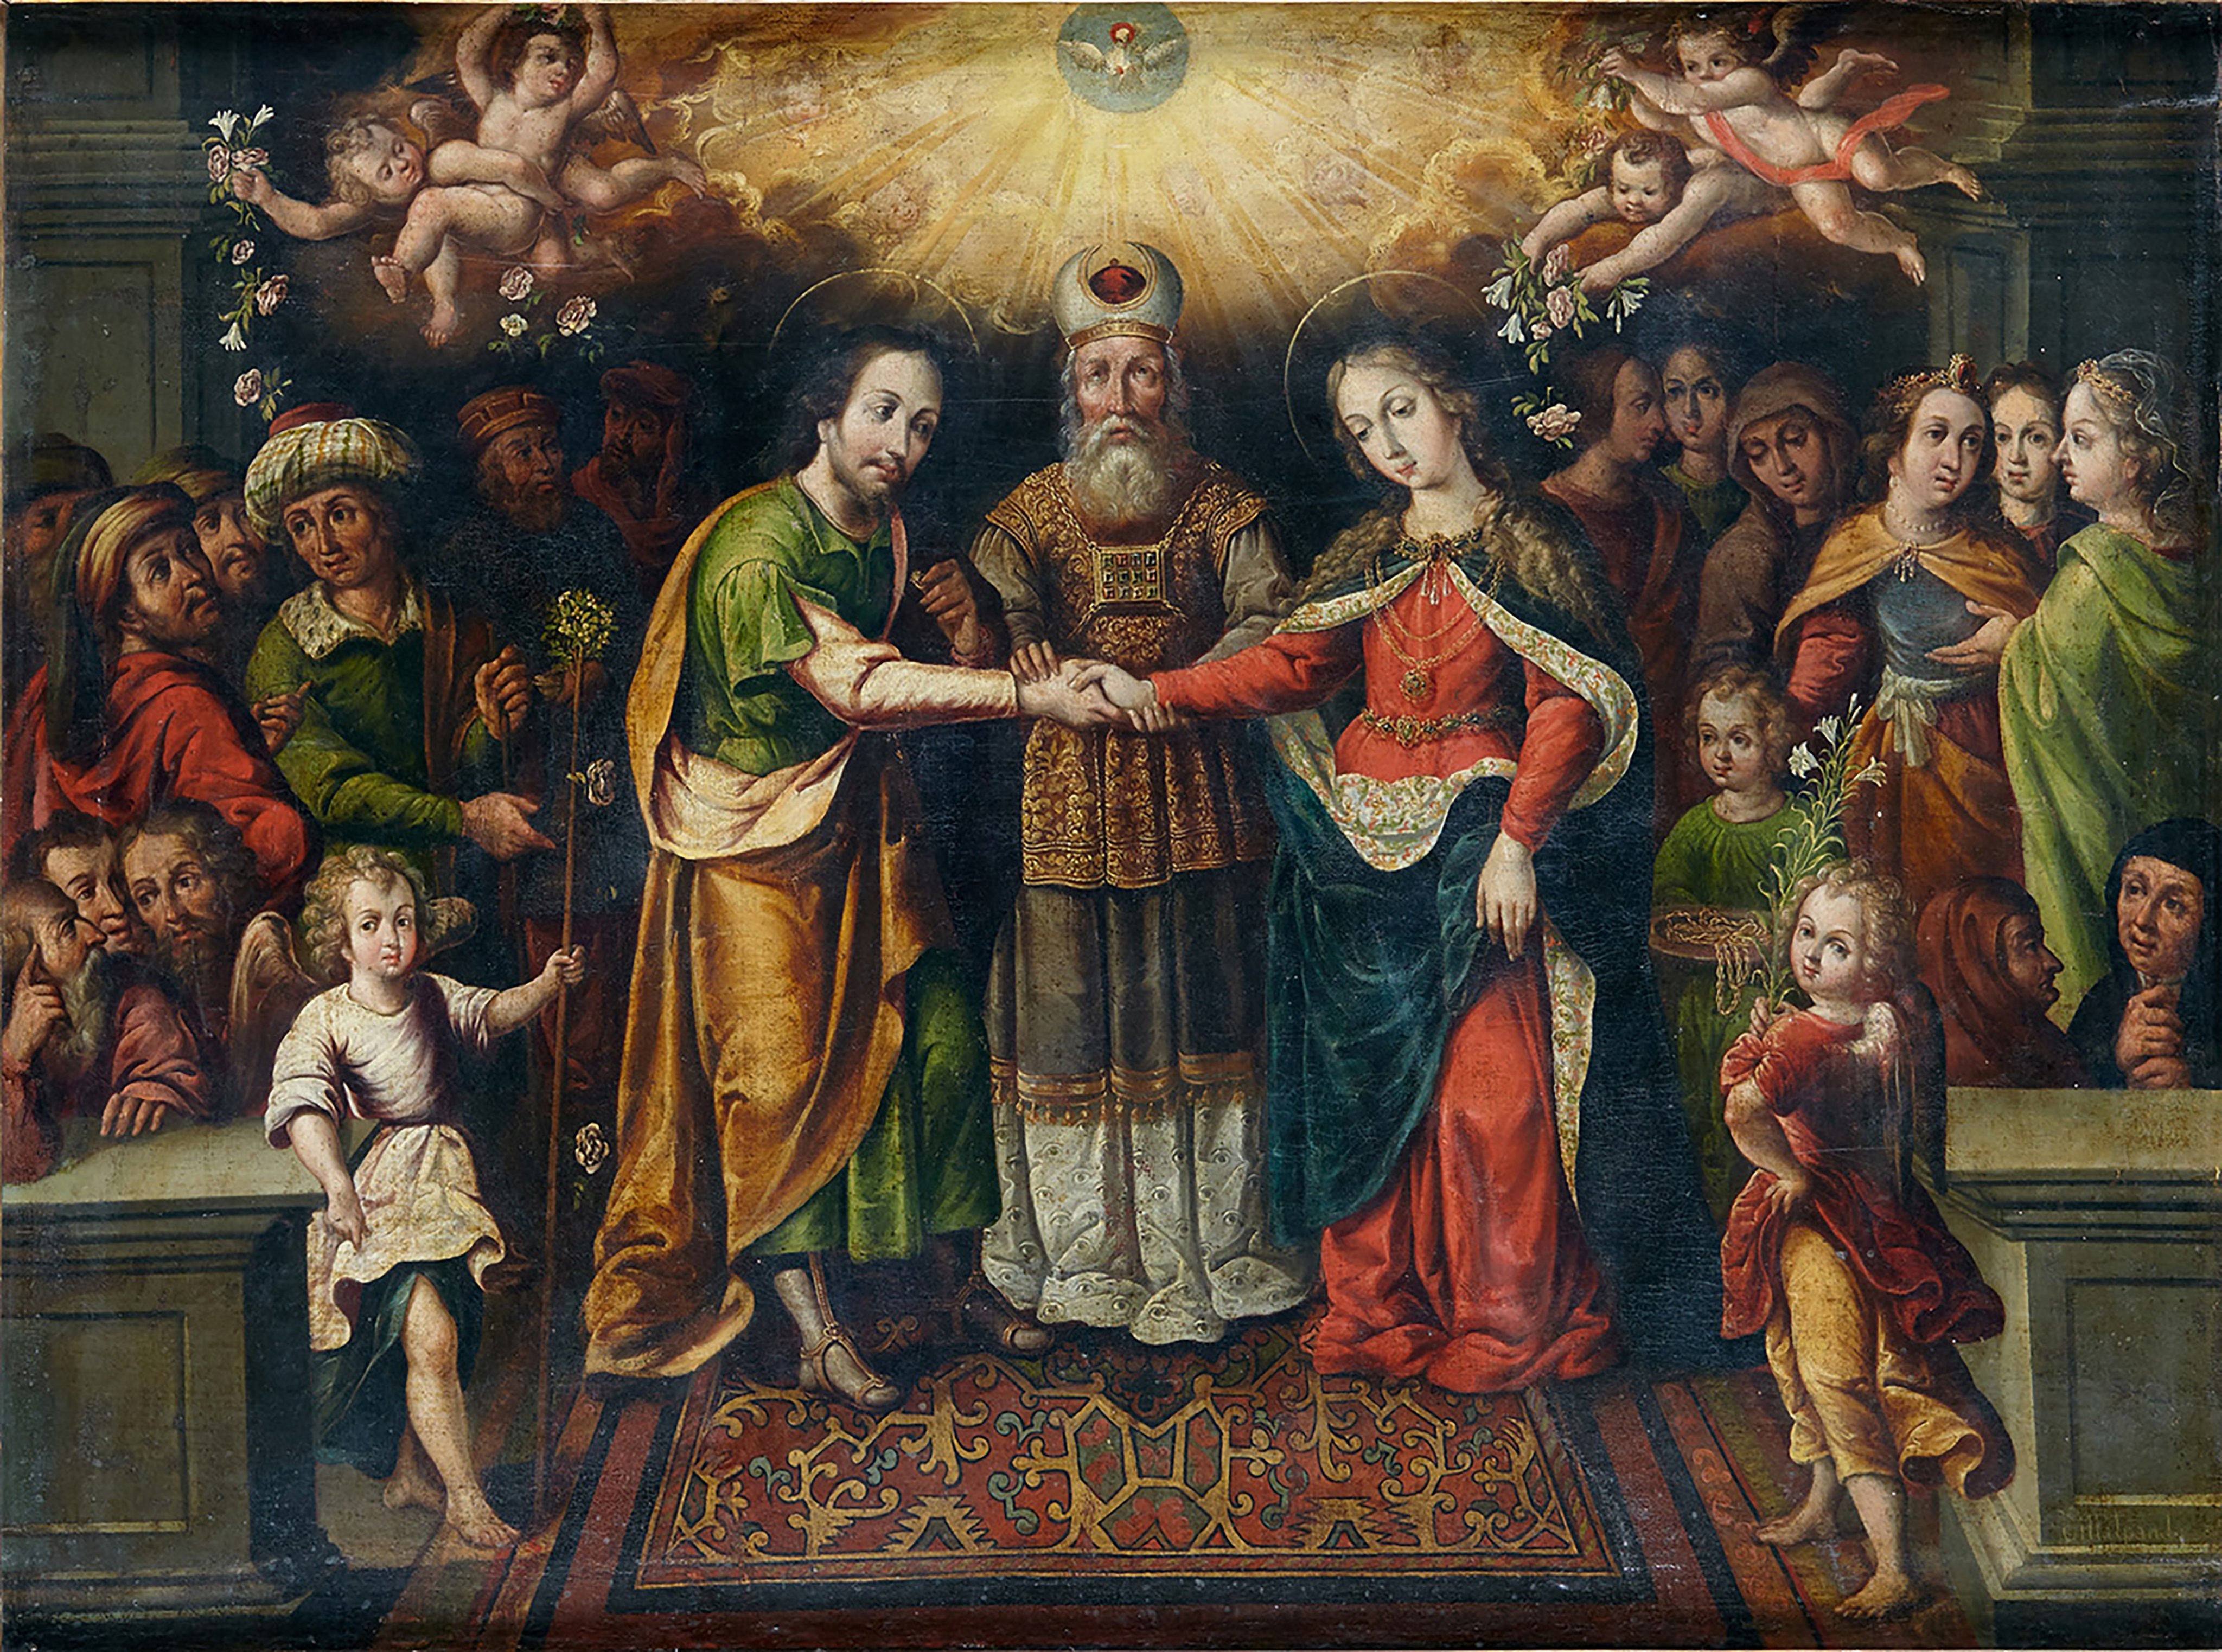 O casamento de São José com a Virgem Maria